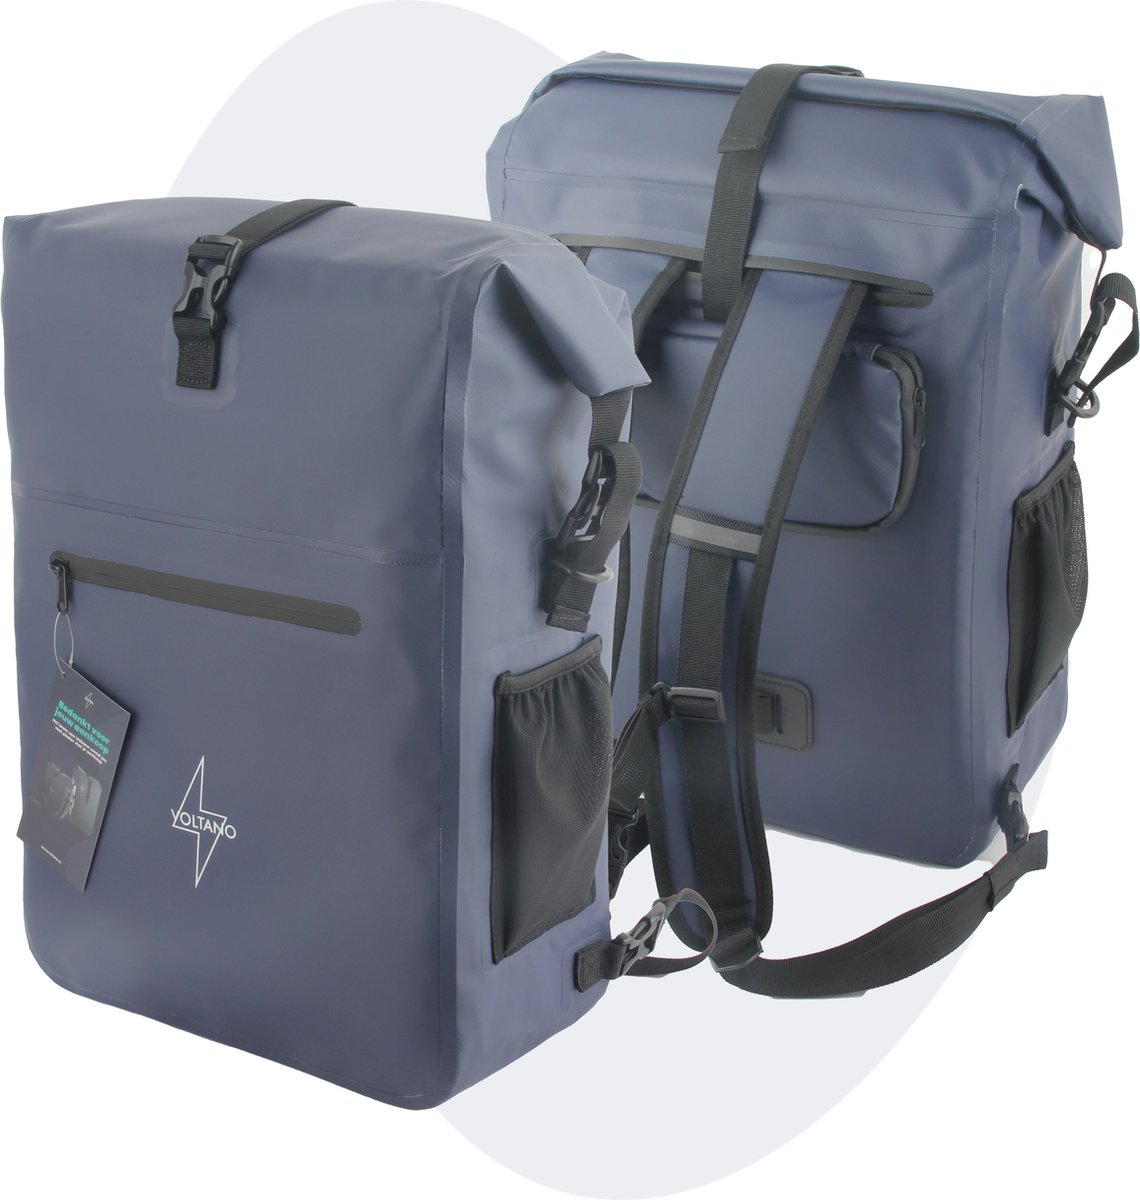 Voltano Luxe Fietstas / Rugtas 28L - Marine Blauw - Enkele Pakaftas - 100% Waterdicht - Met Laptop Compartiment - Voltano